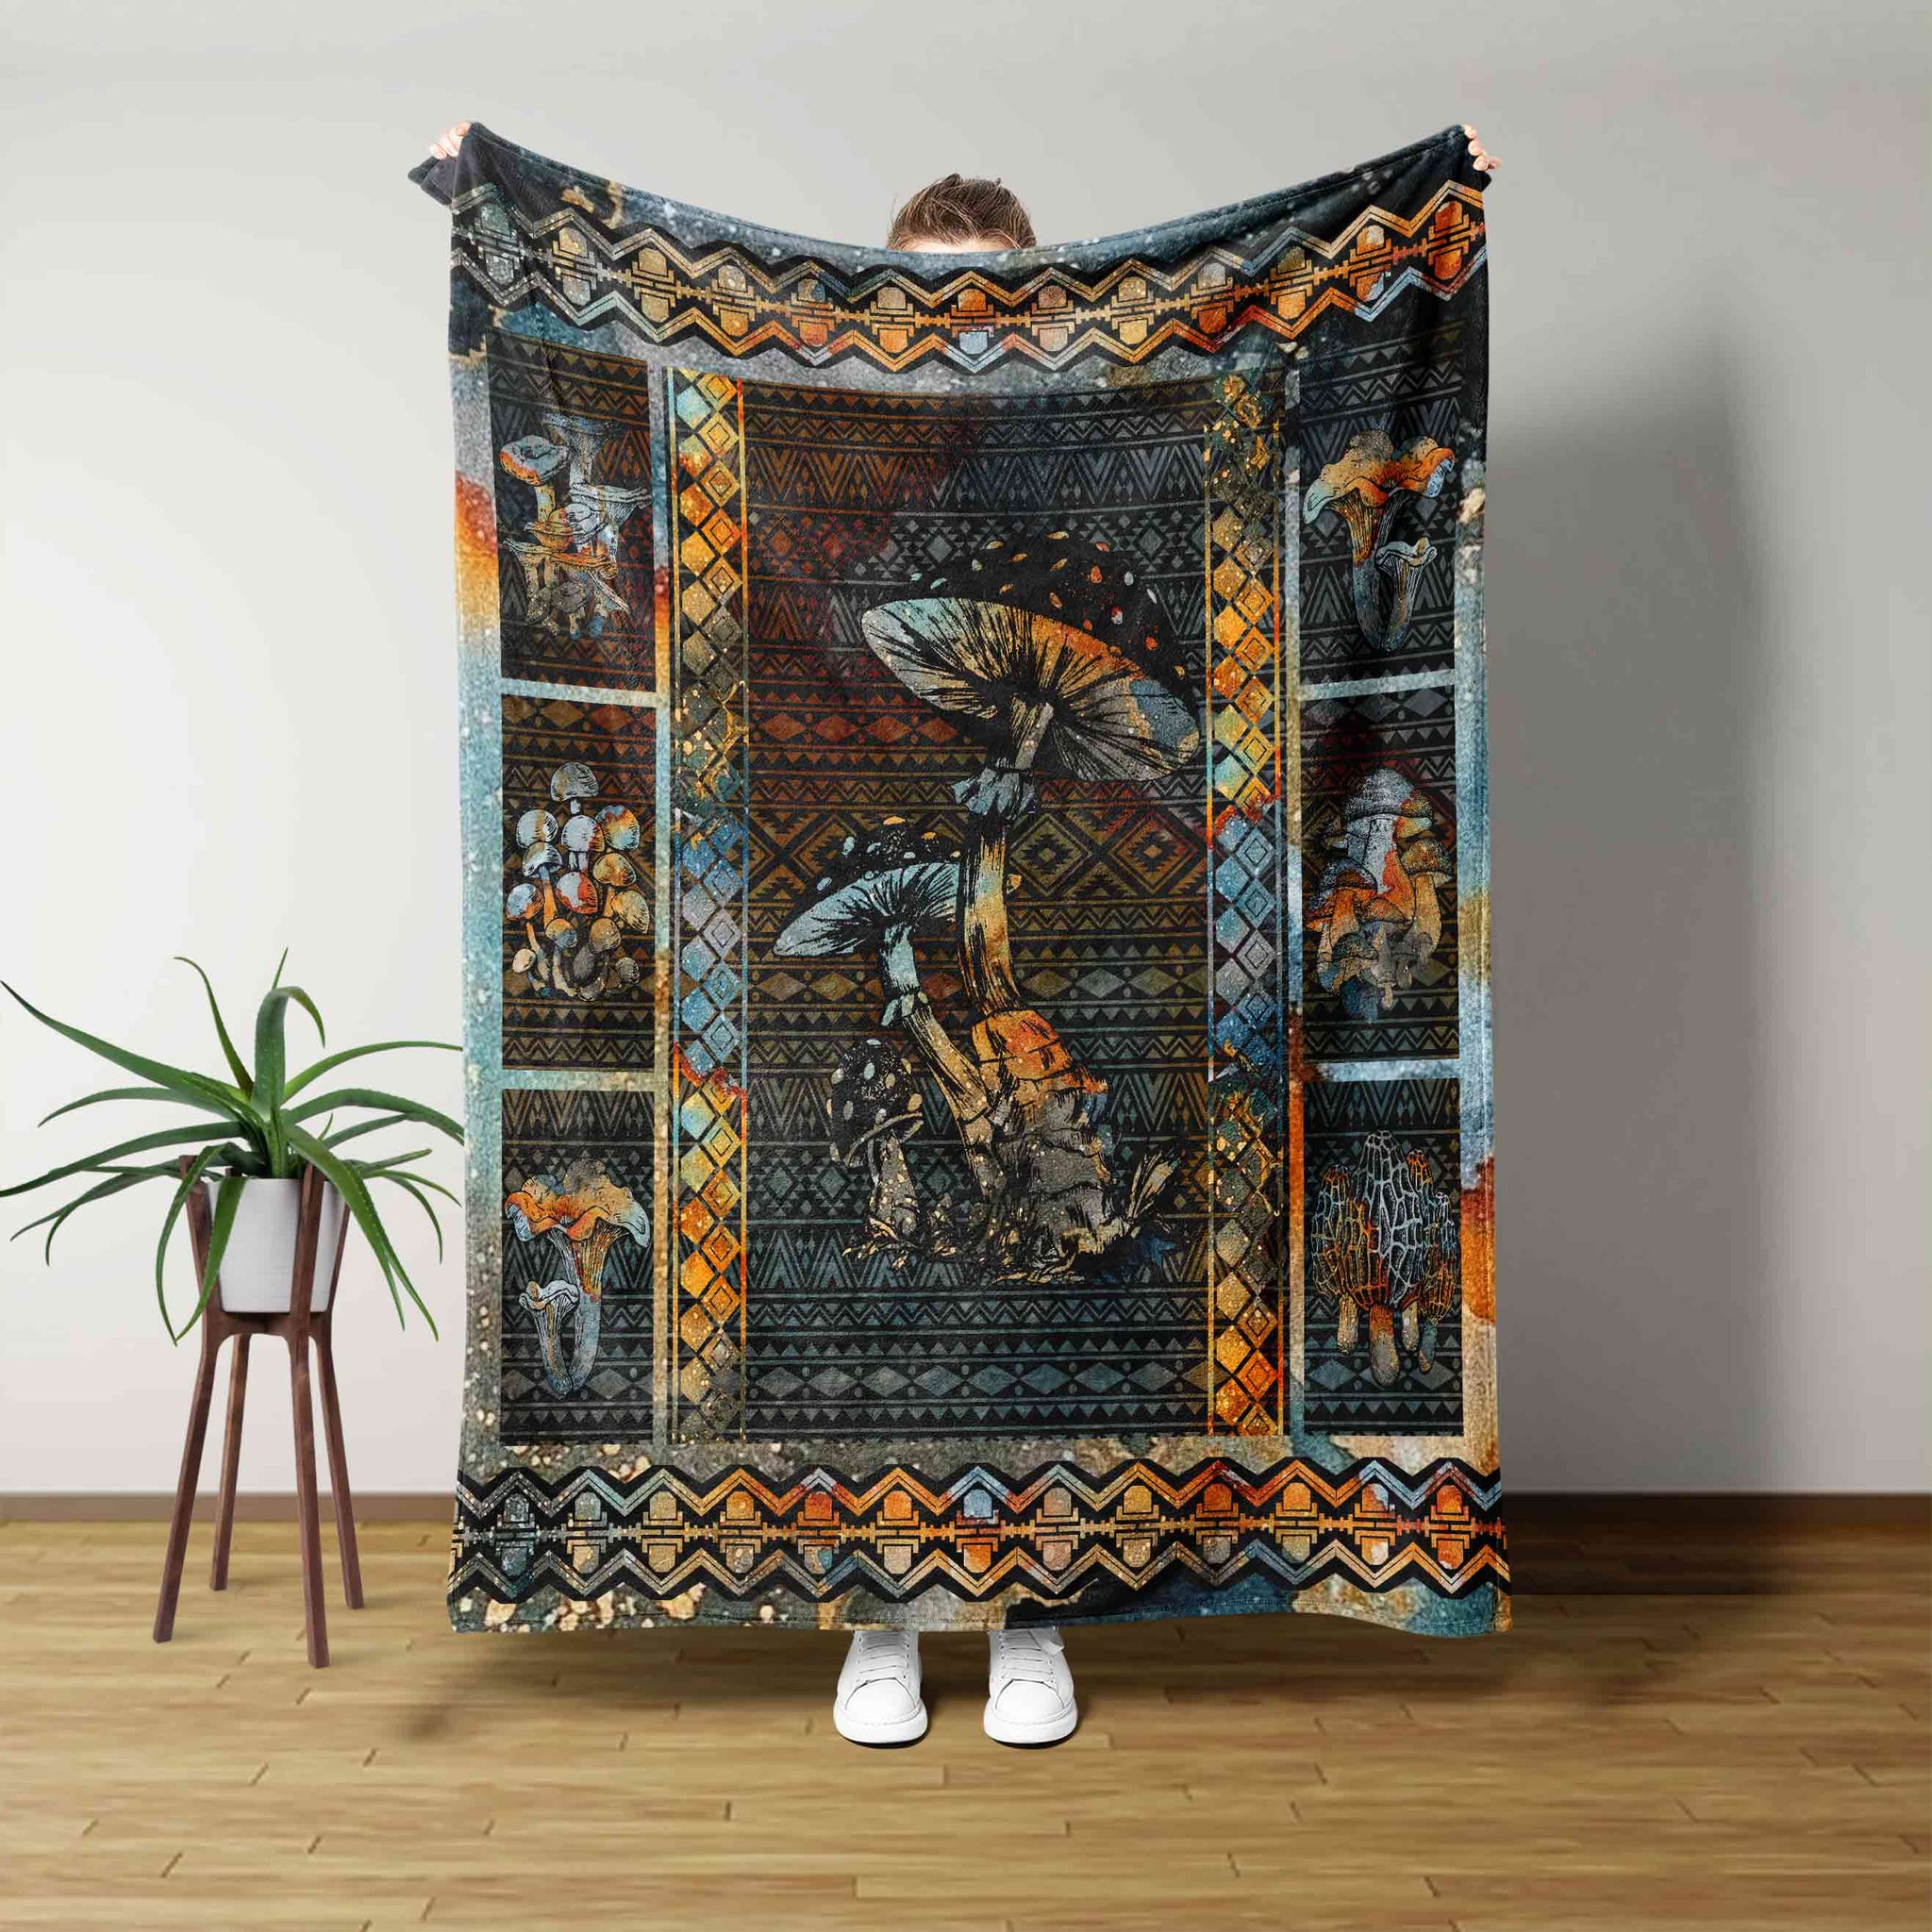 Quilt Blanket Patterns, Mushroom Blanket, Family Blanket, Wall Art Blanket, Gift Blanket